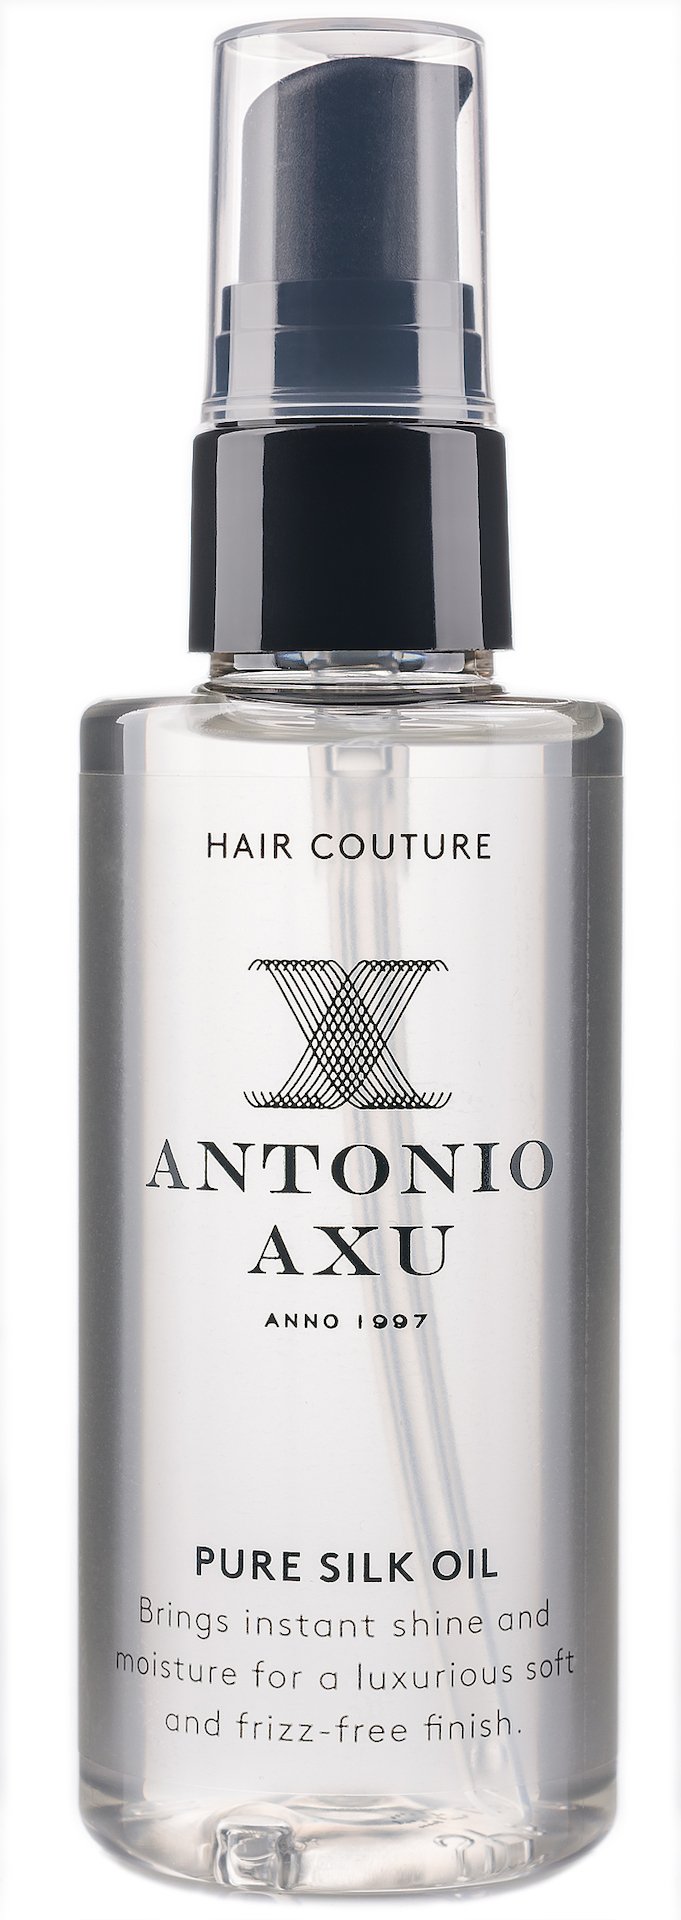 Antonio Axu Pure Silk Oil 75ml